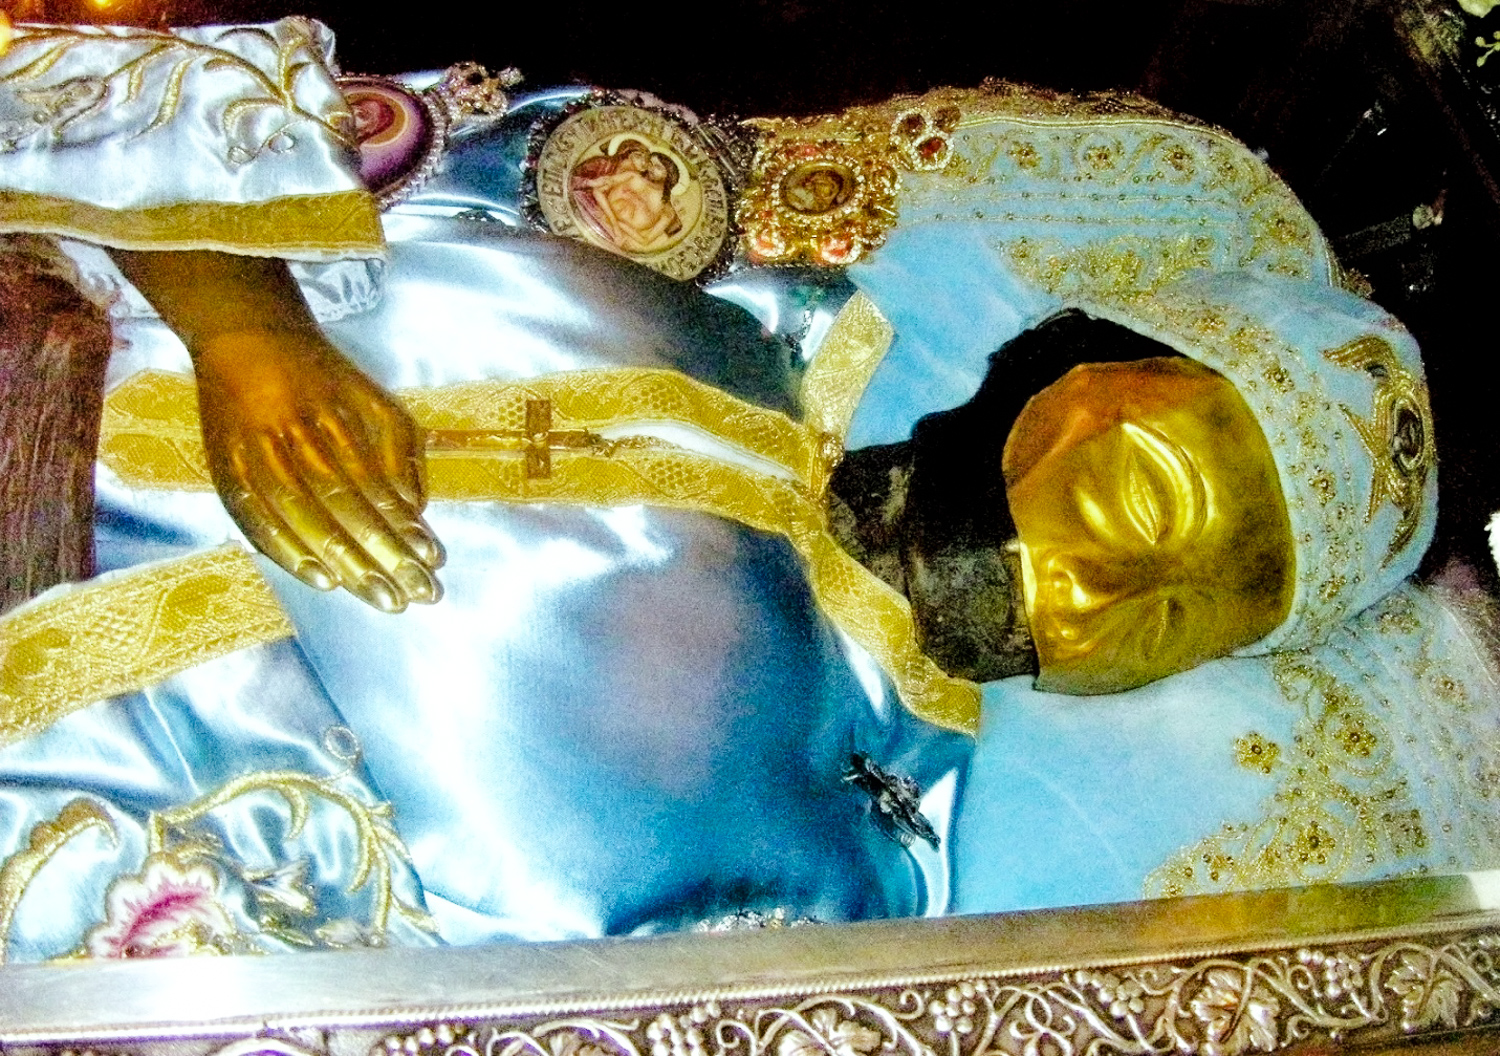 Под стеклом саркофага можно отчётливо рассмотреть убранное парчой и потемневшее тело (мощи) святого Иоанна Русского. Большую часть его лица закрывает золотая пластина